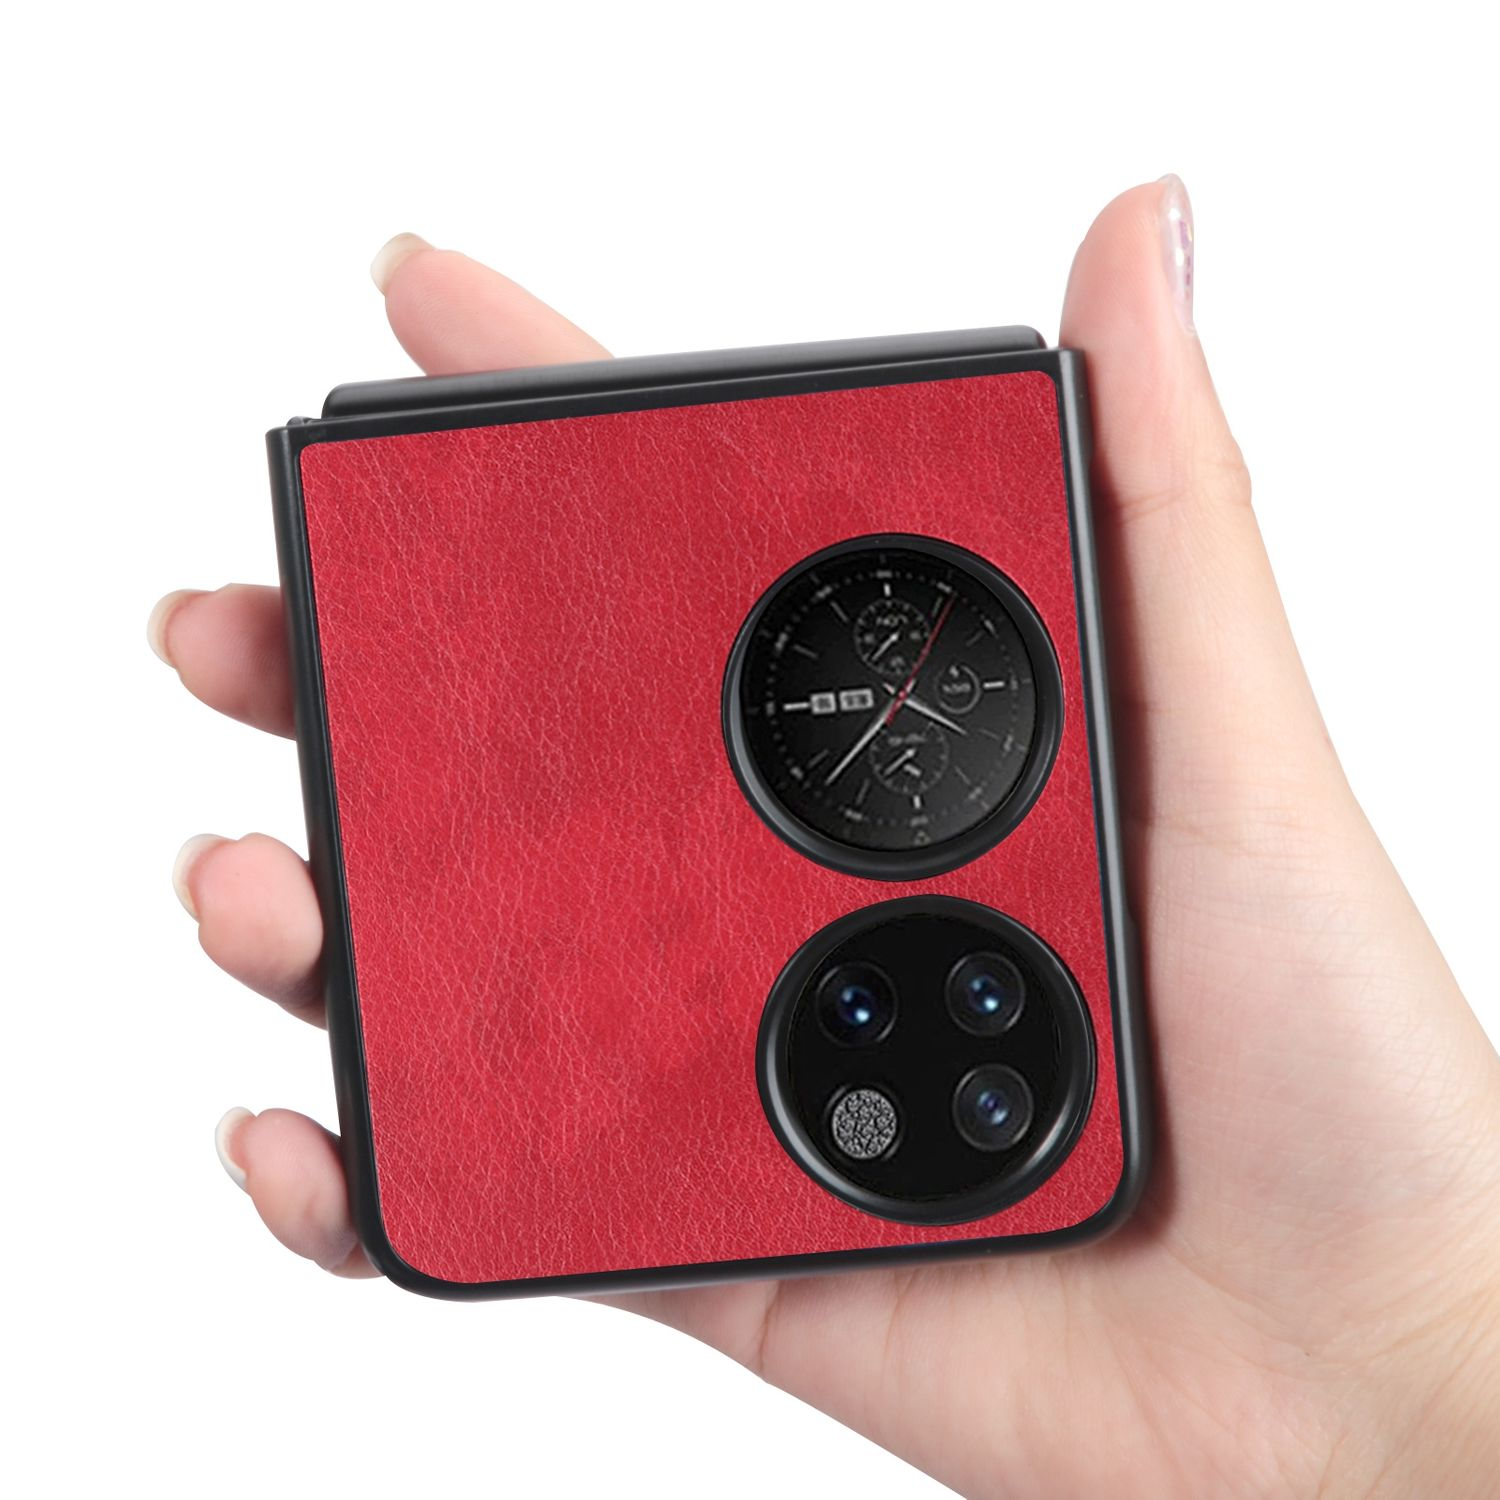 KÖNIG DESIGN Case, Backcover, Huawei, P50 Pocket, Rot